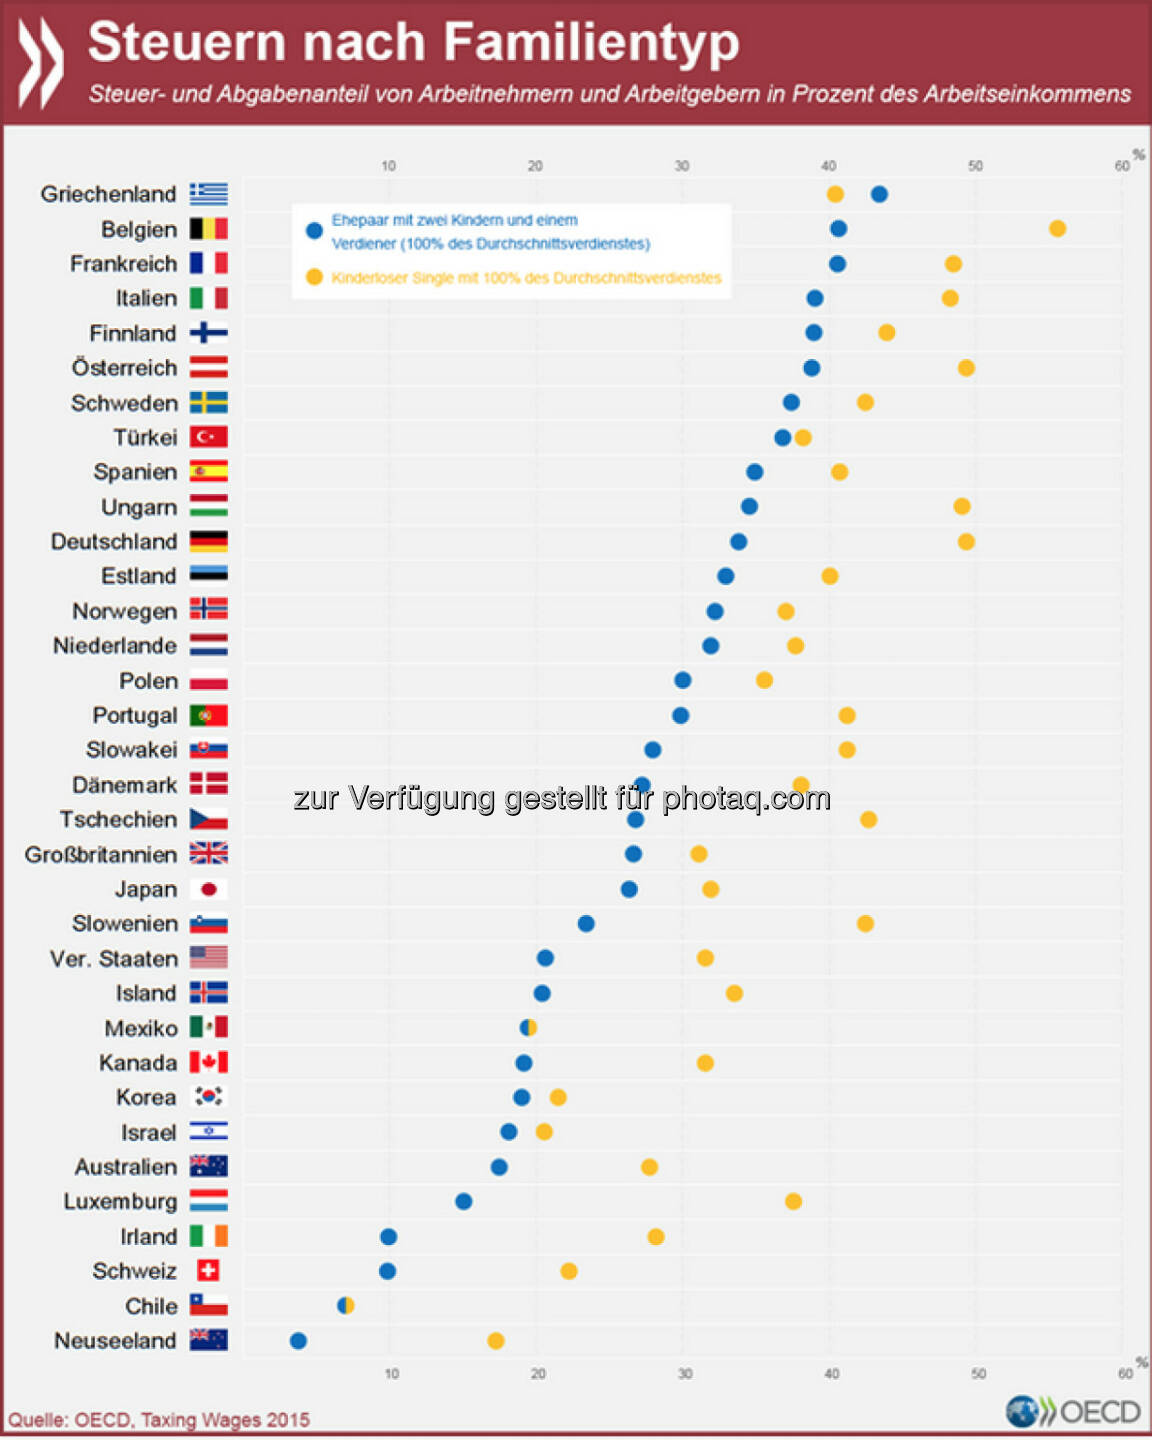 Familien mit Kindern werden in den meisten OECD-Ländern steuerlich entlastet: Im OECD-Mittel sind die Steuern und Abgaben auf ihre Arbeitseinkommen um ein Viertel geringer als bei kinderlosen Singles. In Deutschland ist die Abgabenlast für Familien im Verhältnis sogar noch niedriger.
Modellrechnungen zu anderen Familientypen findet Ihr unter: http://bit.ly/1R5nePF